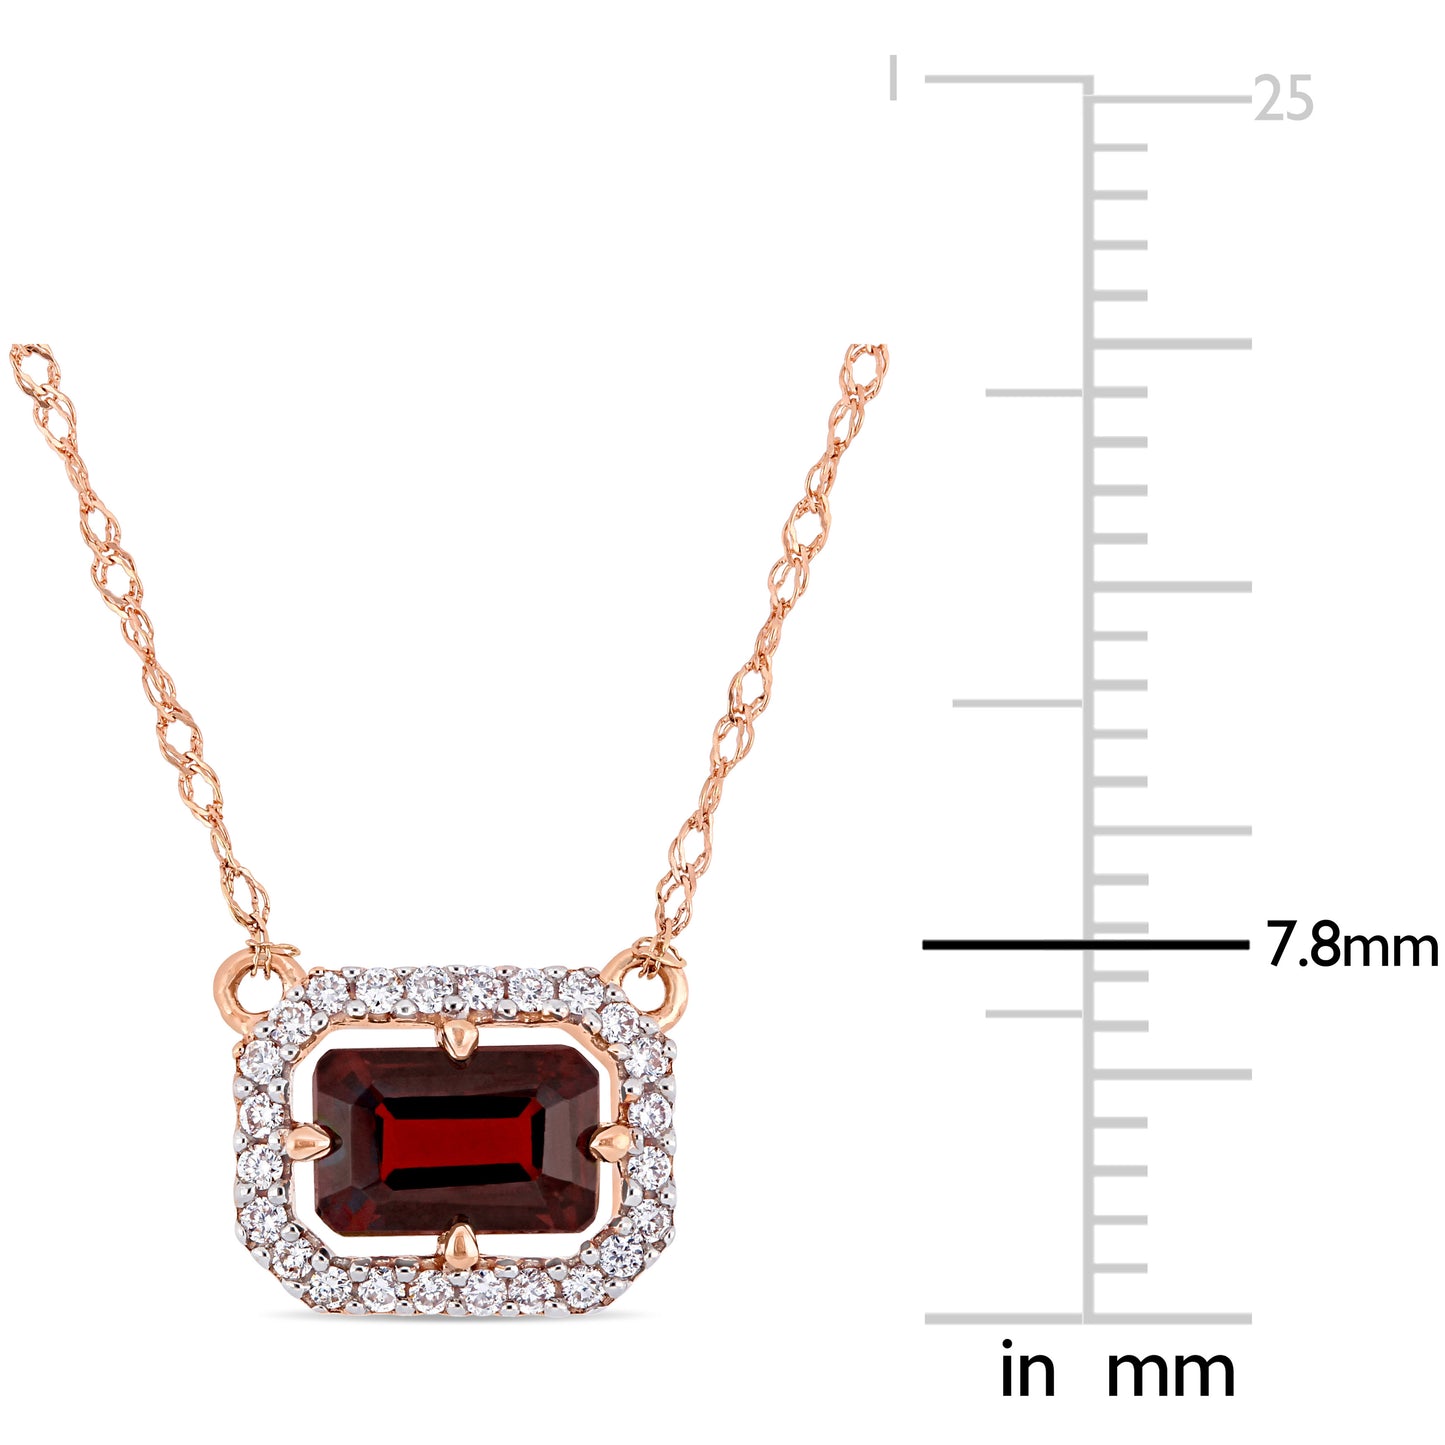 Garnet & Diamond Floating Necklace in 14k Rose Gold